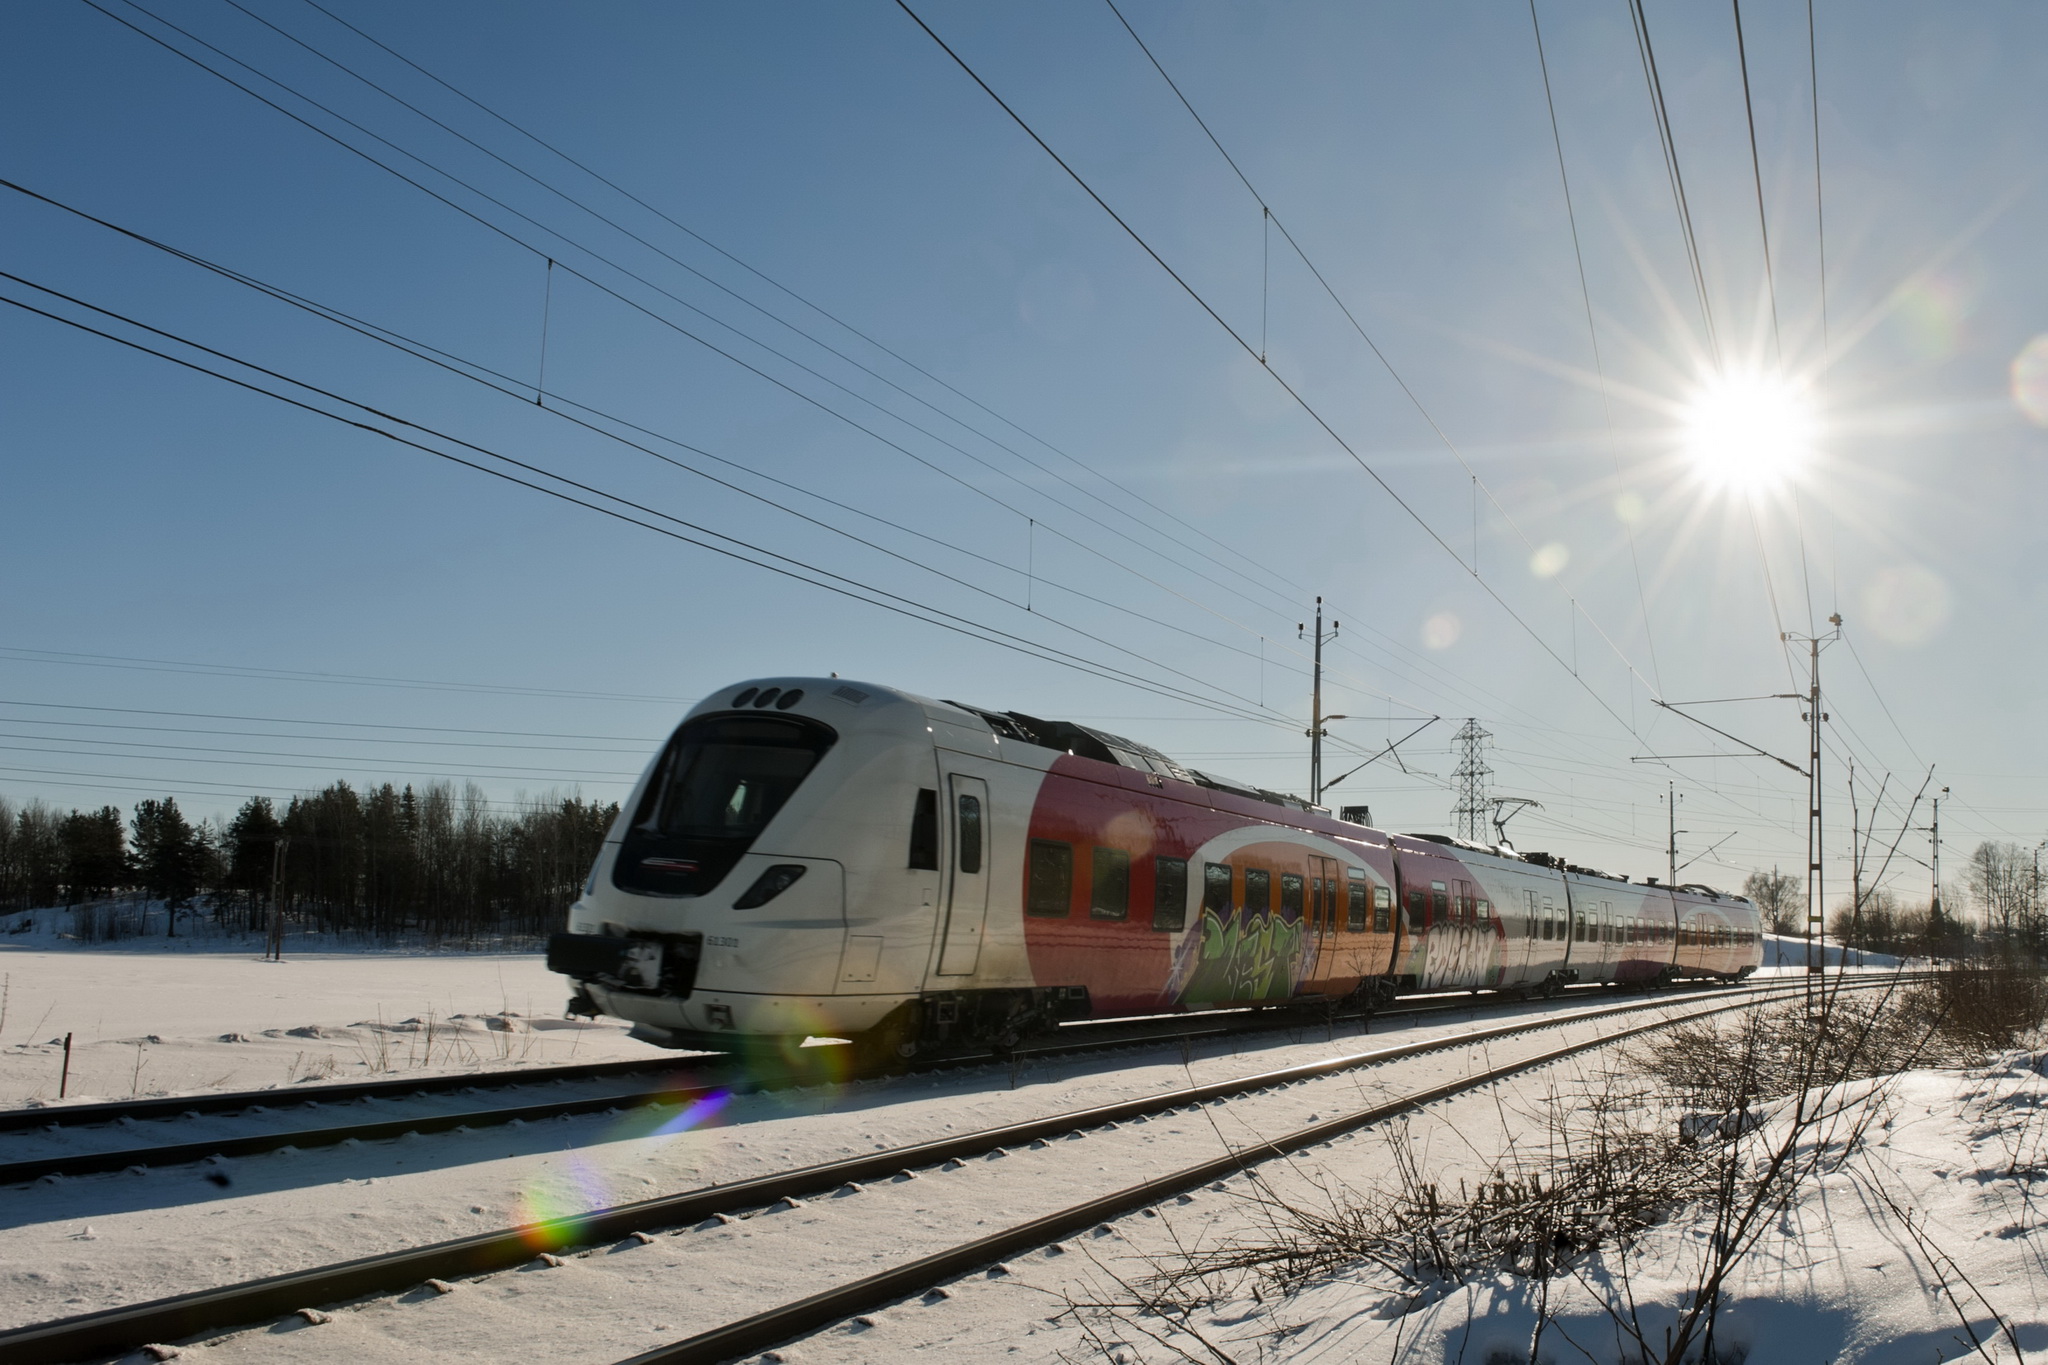 Chạy bằng năng lượng sạch, hệ thống đường sắt quốc nội của Thụy Điển là một  trong những hệ thống thân thiện với môi trường nhất trên thế giới. (Ảnh: Fredrik  Schlyter/Imagebank.sweden.se)